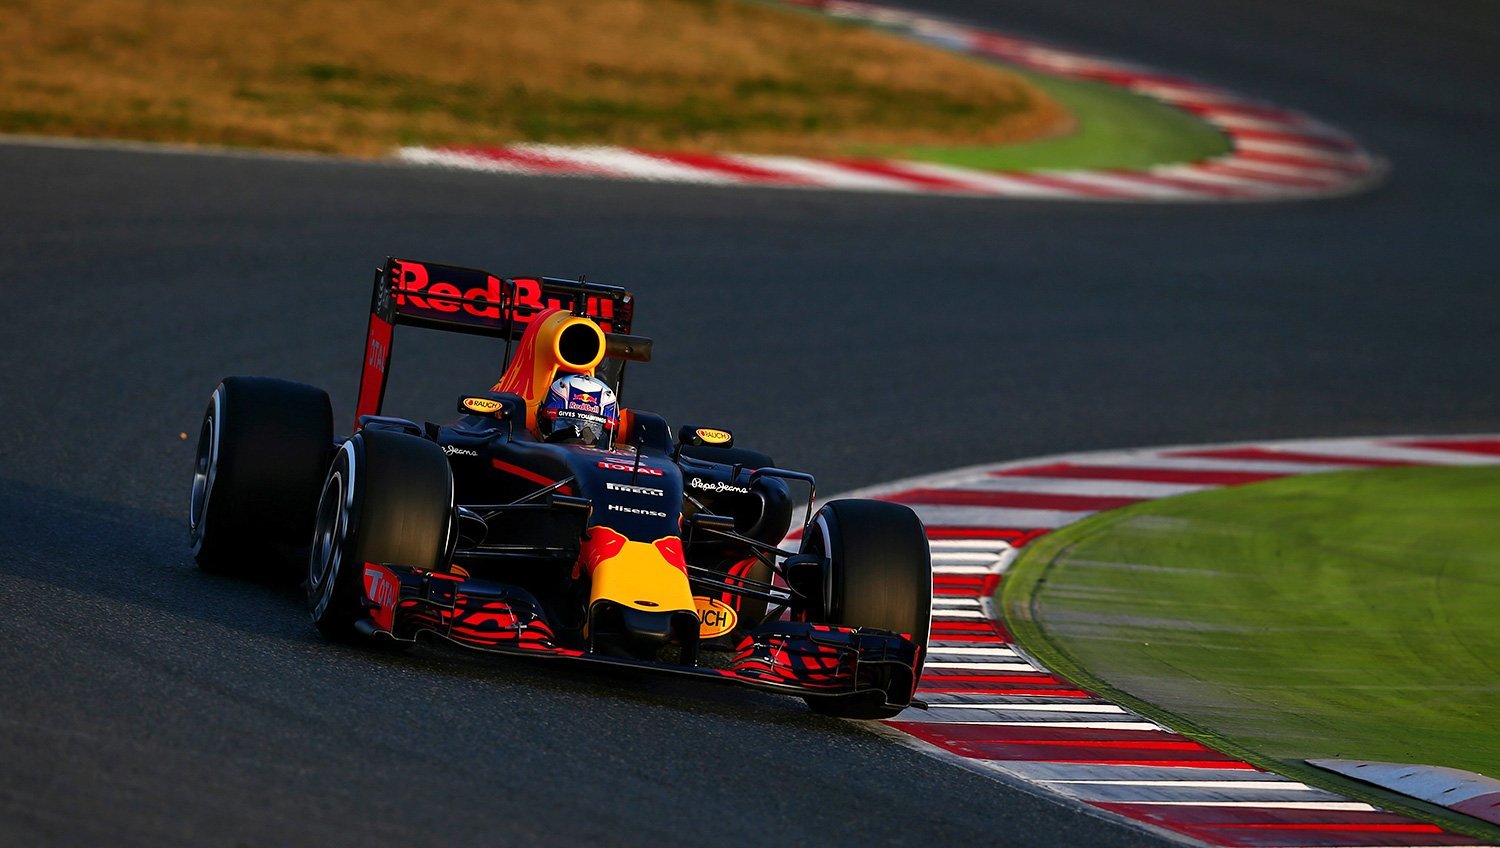 Daniel Ricciardo druhý den testů s Red Bullem RB12 vybojoval pomyslnou stříbrnou příčku